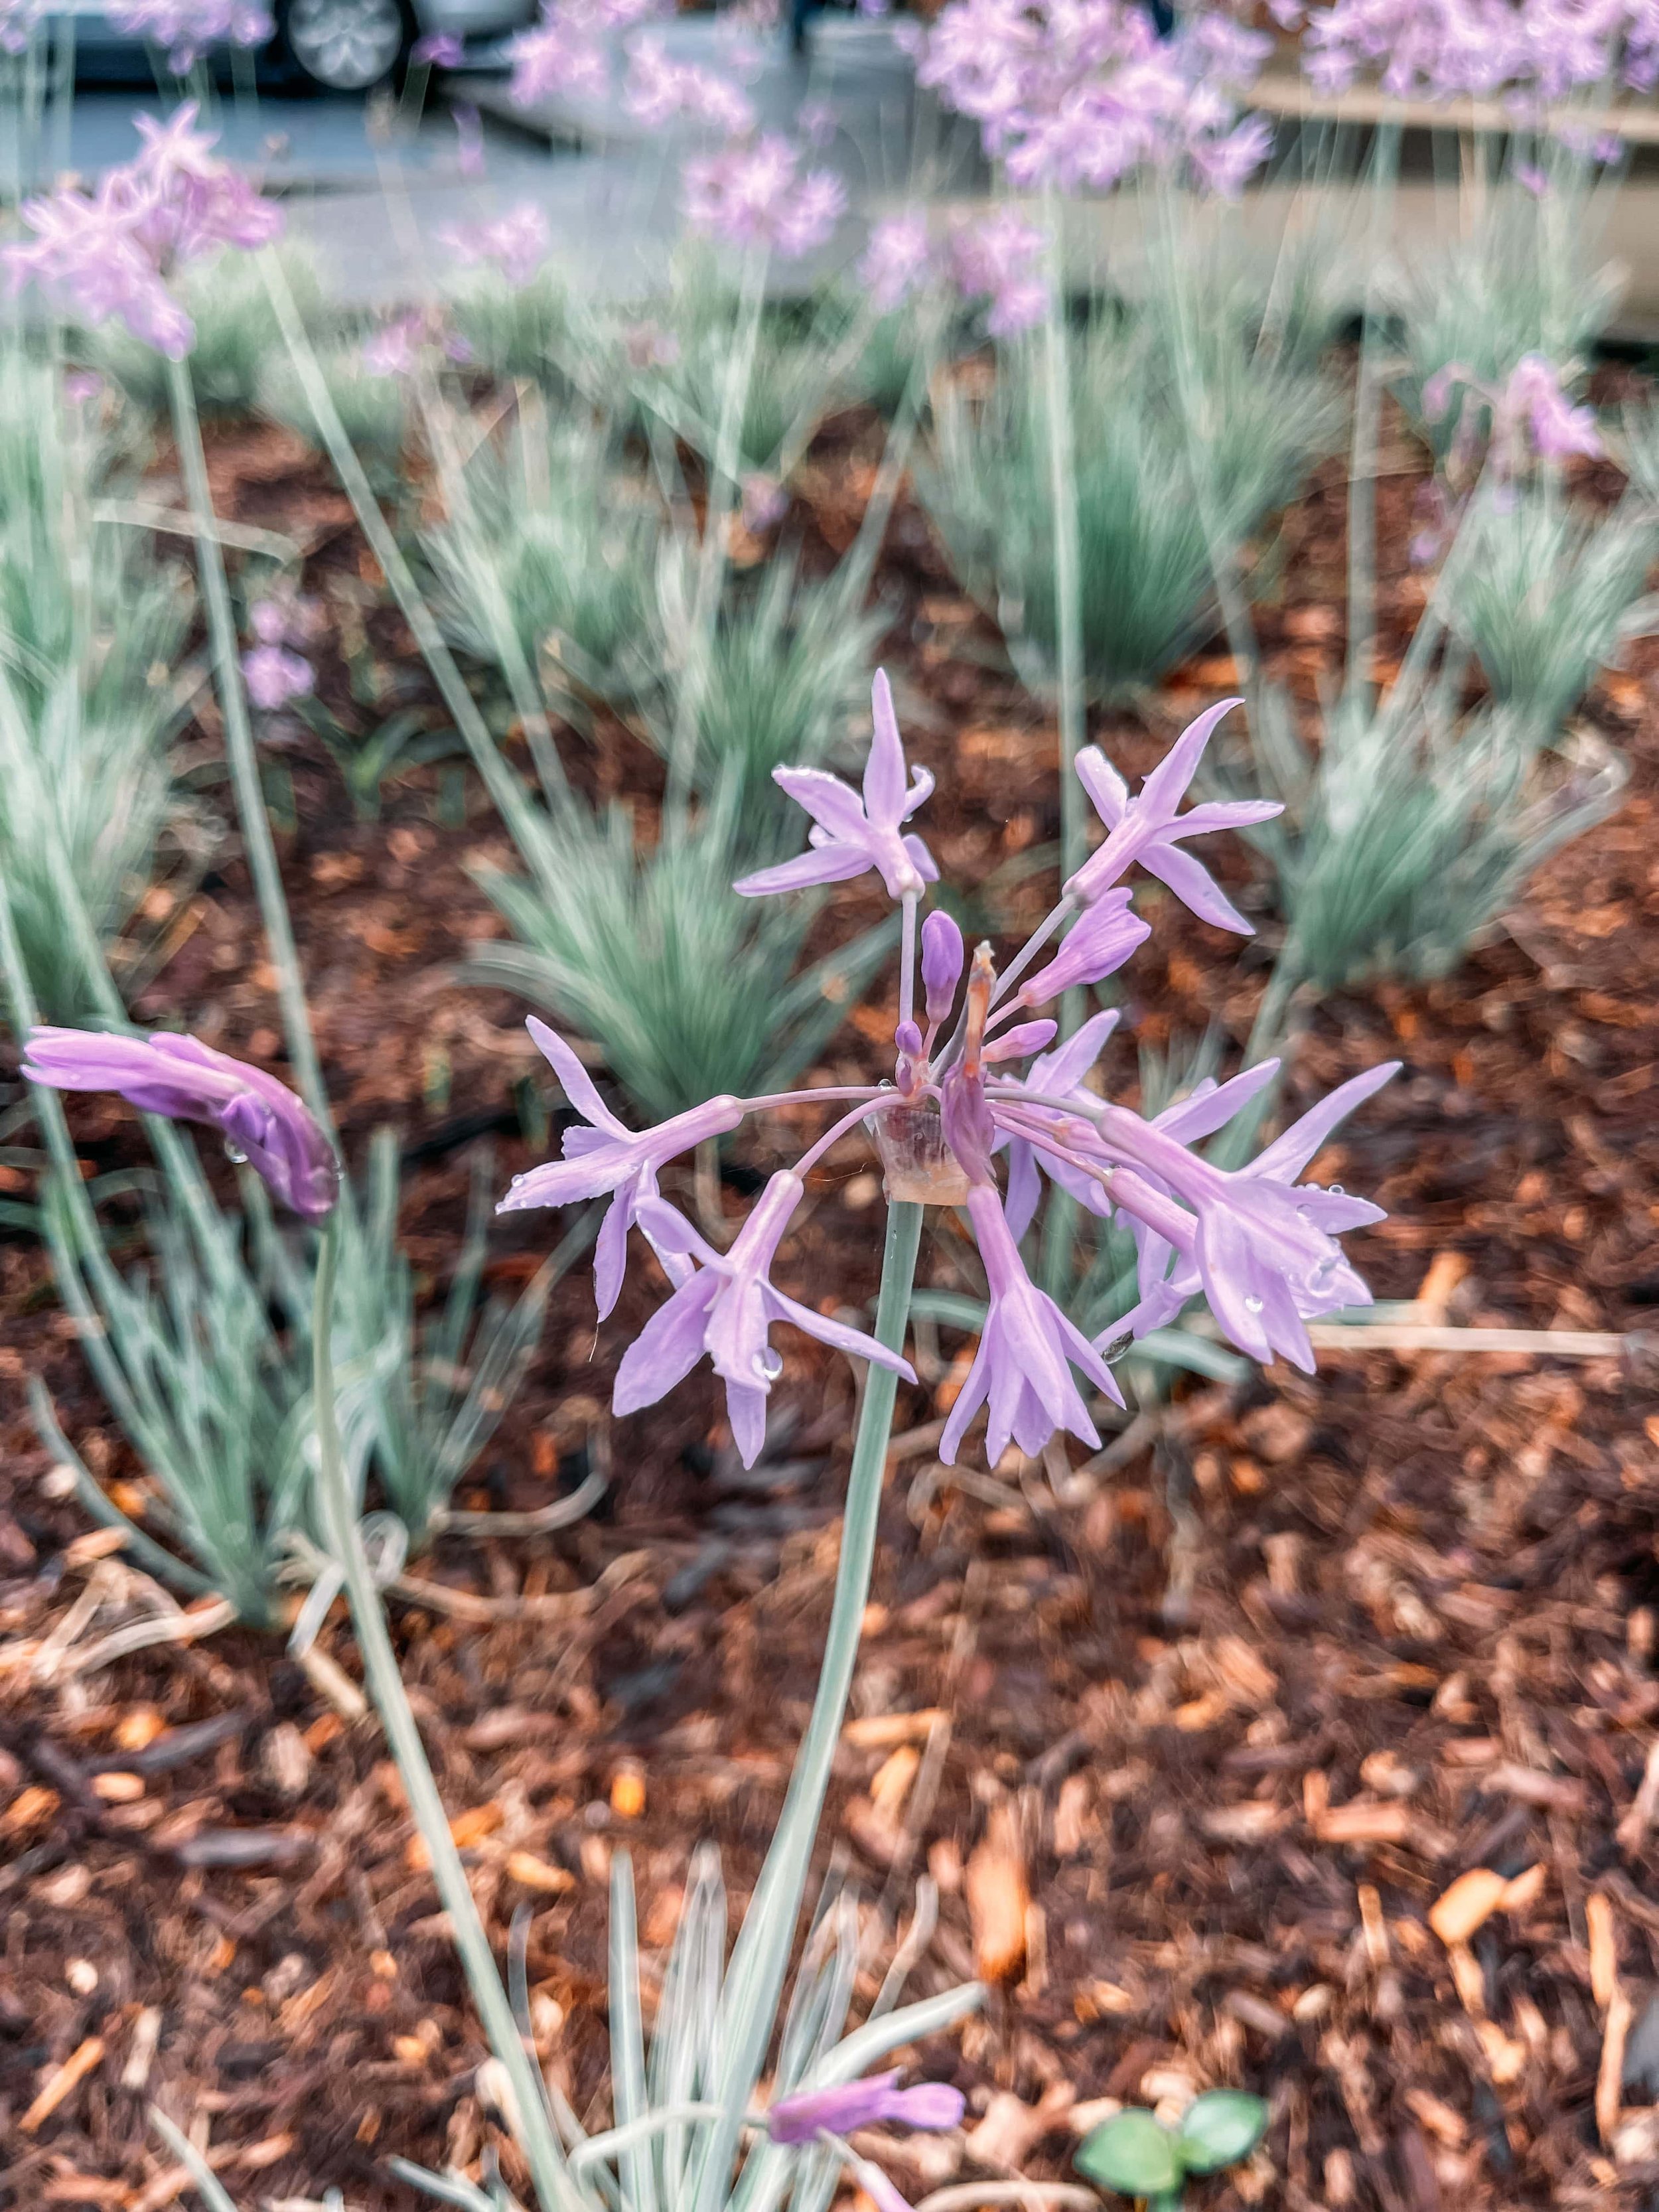 Purple flowers blooming - Bellingen - New South Wales (NSW) - Australia